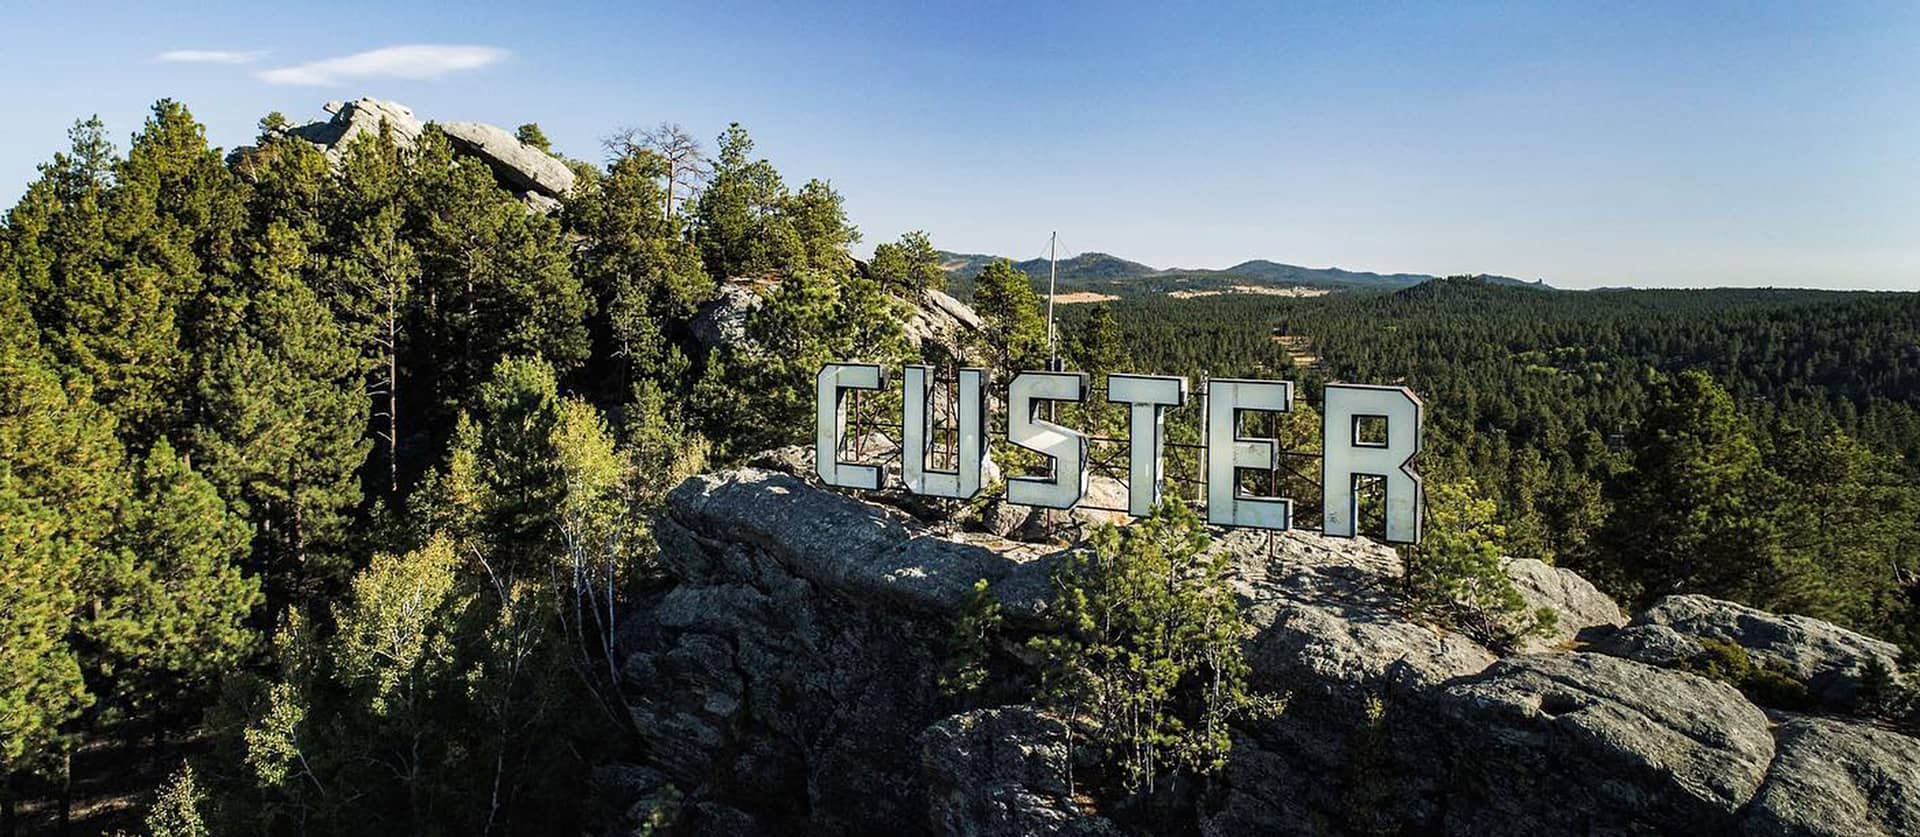 CusterHeader